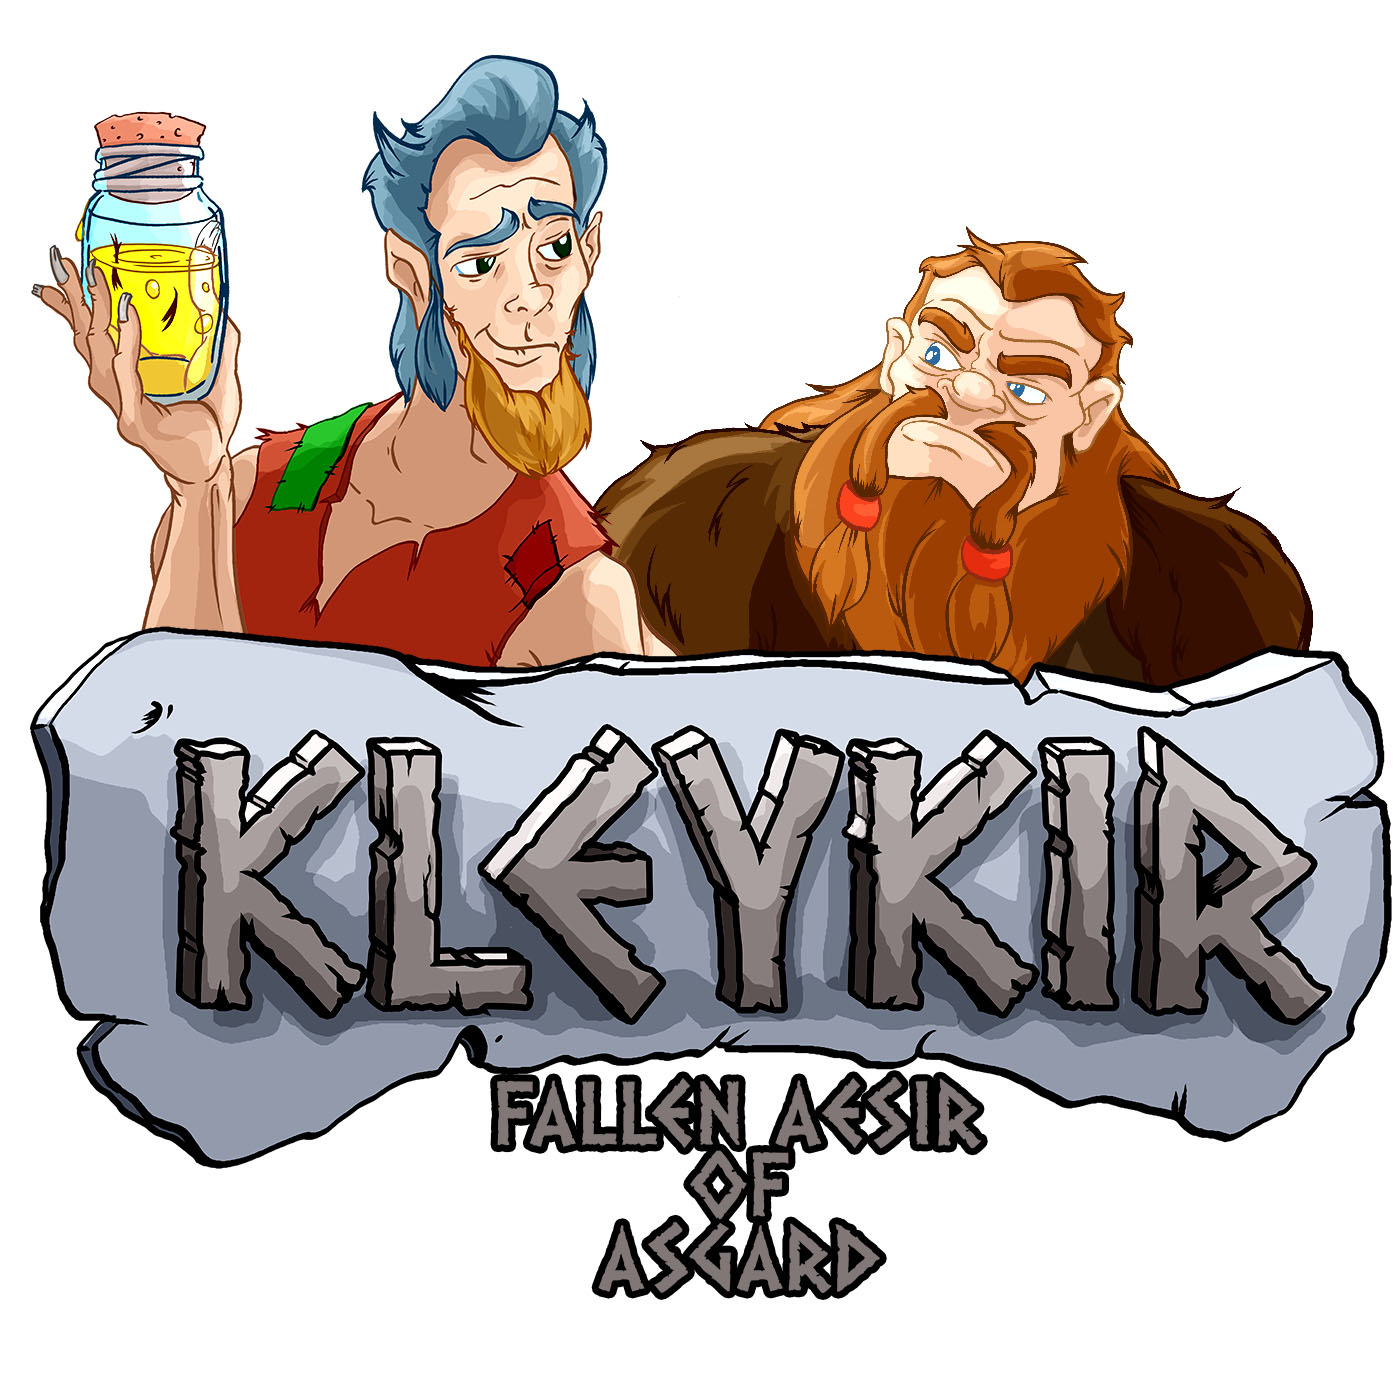 Kleykir, Fallen Aesir of Asgard: Episode 3, Illy Fated Tyrs.